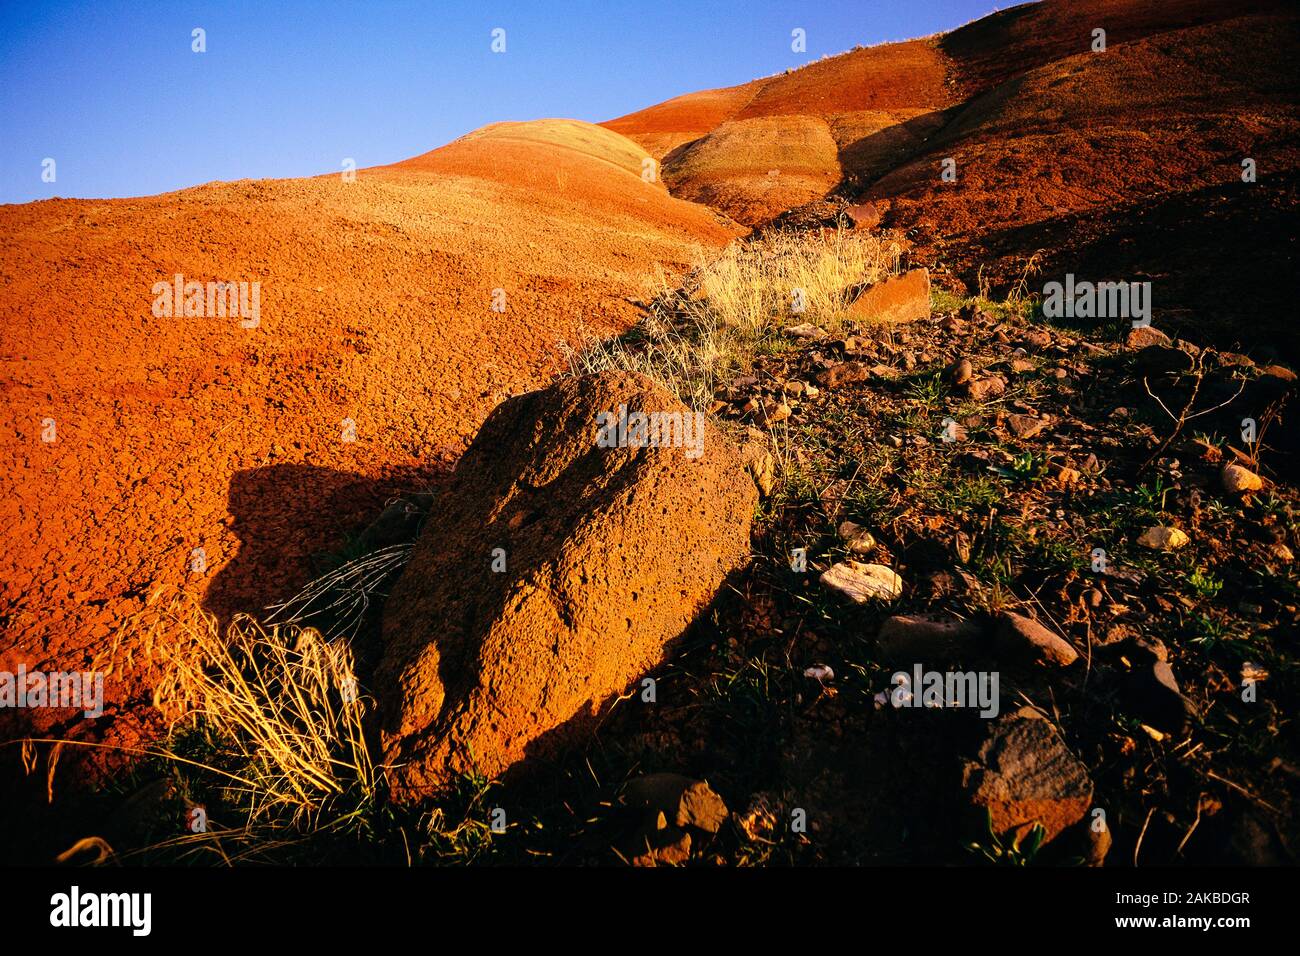 Paesaggio con formazioni rocciose nel deserto, John Day Fossil Beds National Park, Oregon, Stati Uniti d'America Foto Stock